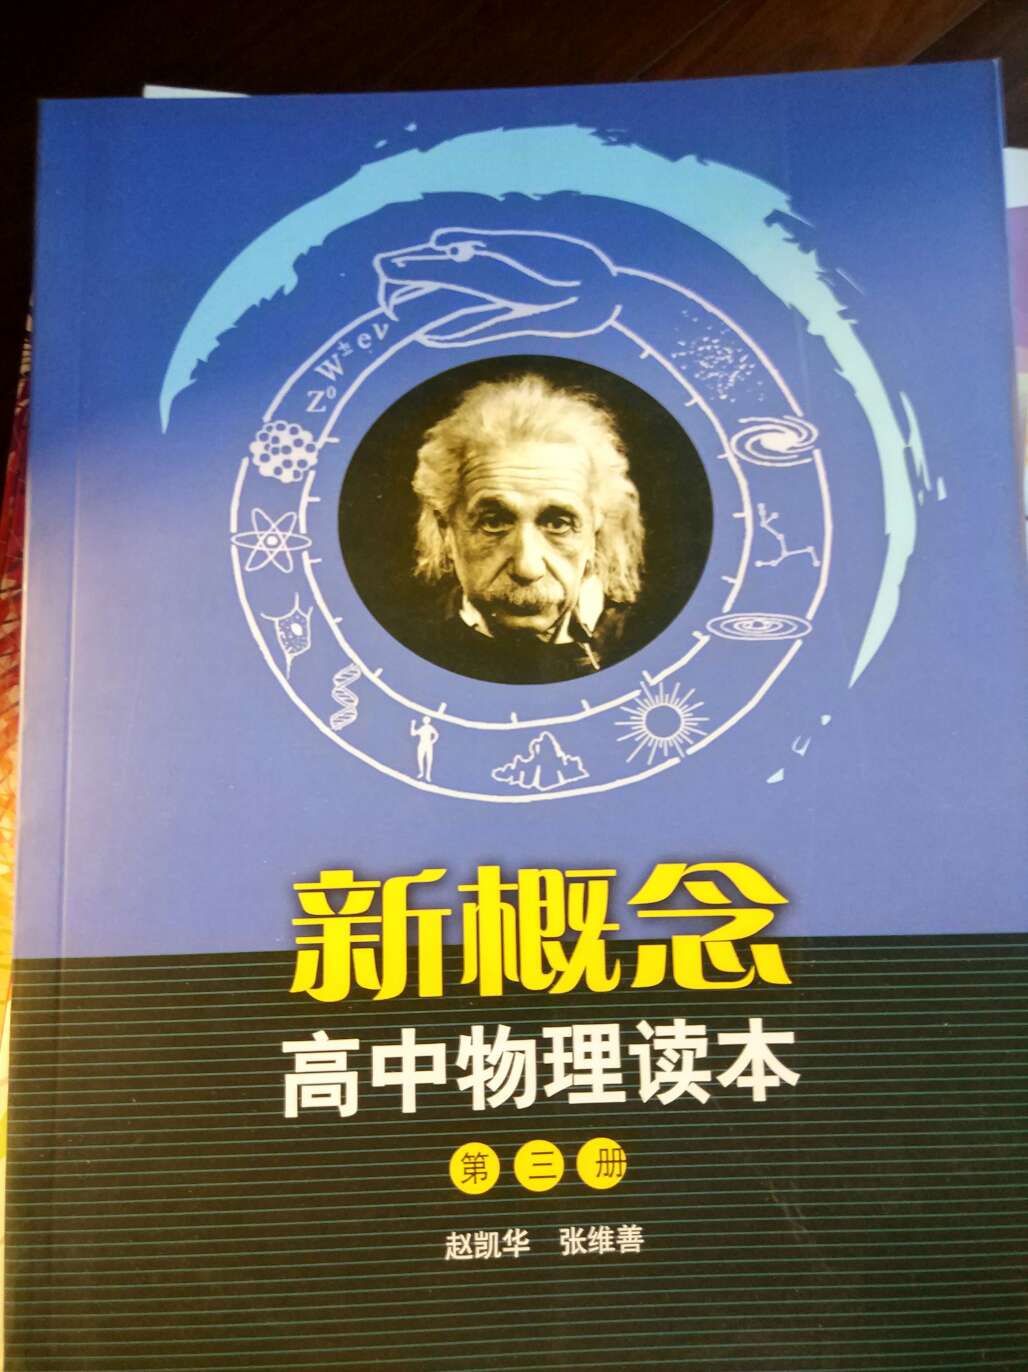 新概念高中物理课本与汉街上买的应该还可以。